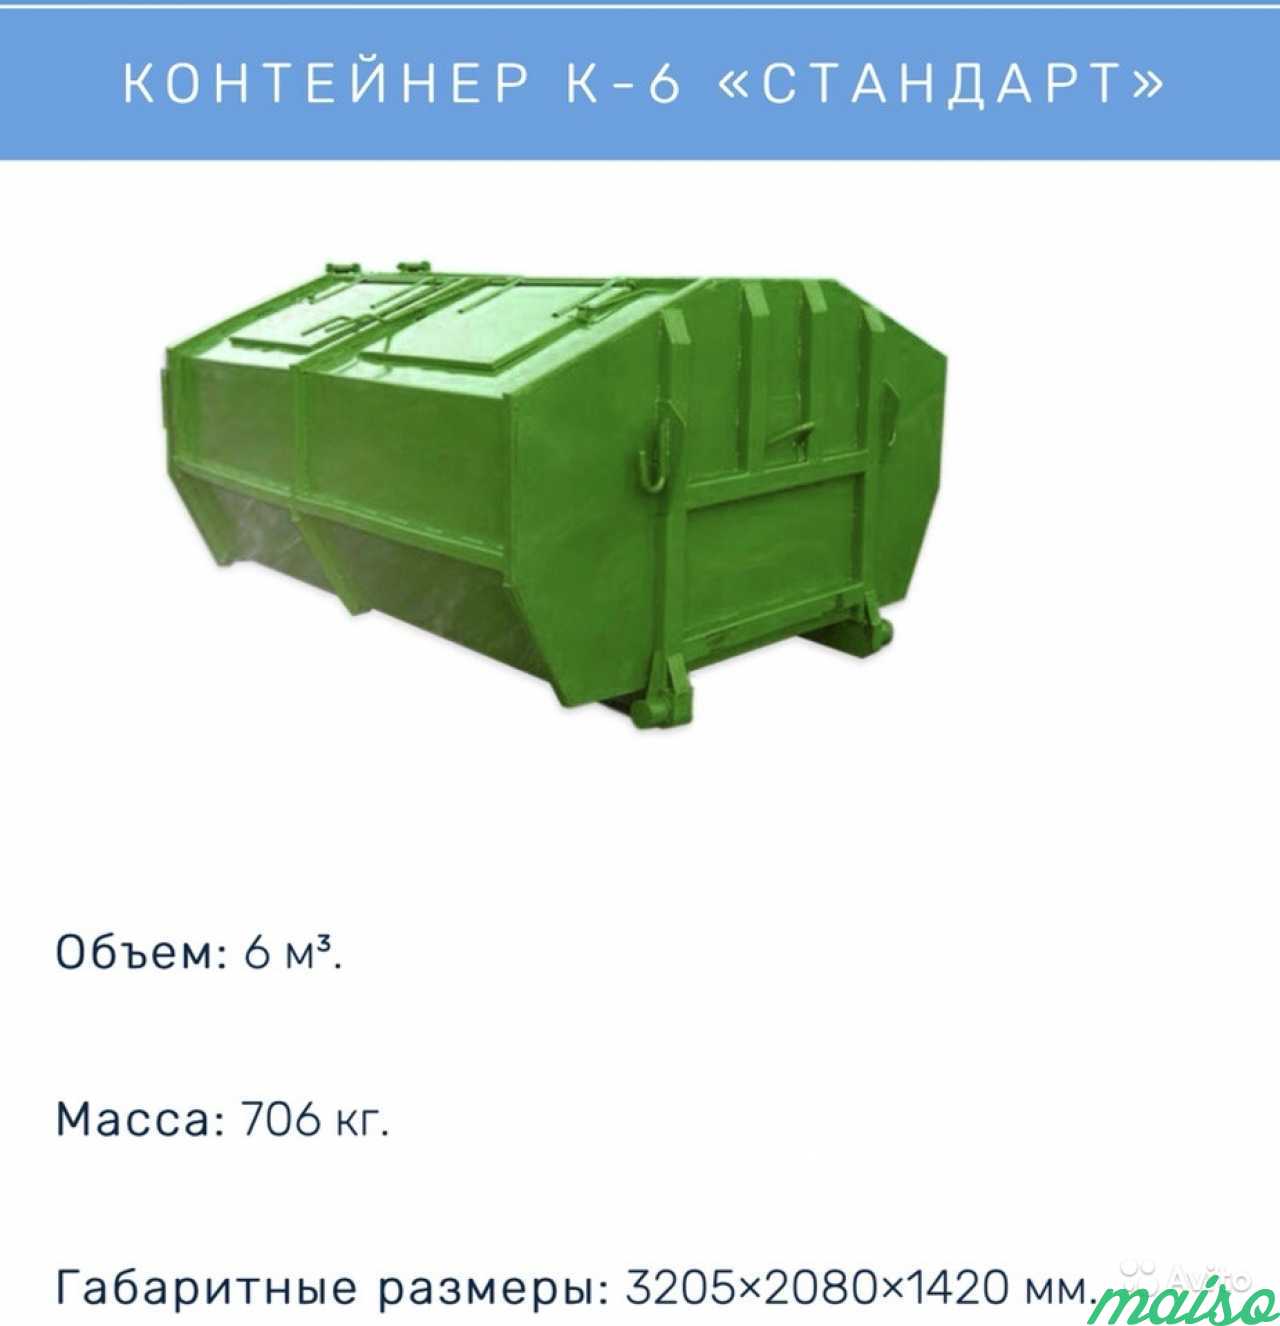 Аренда мусорных контейнеров и пухто в Санкт-Петербурге. Фото 3